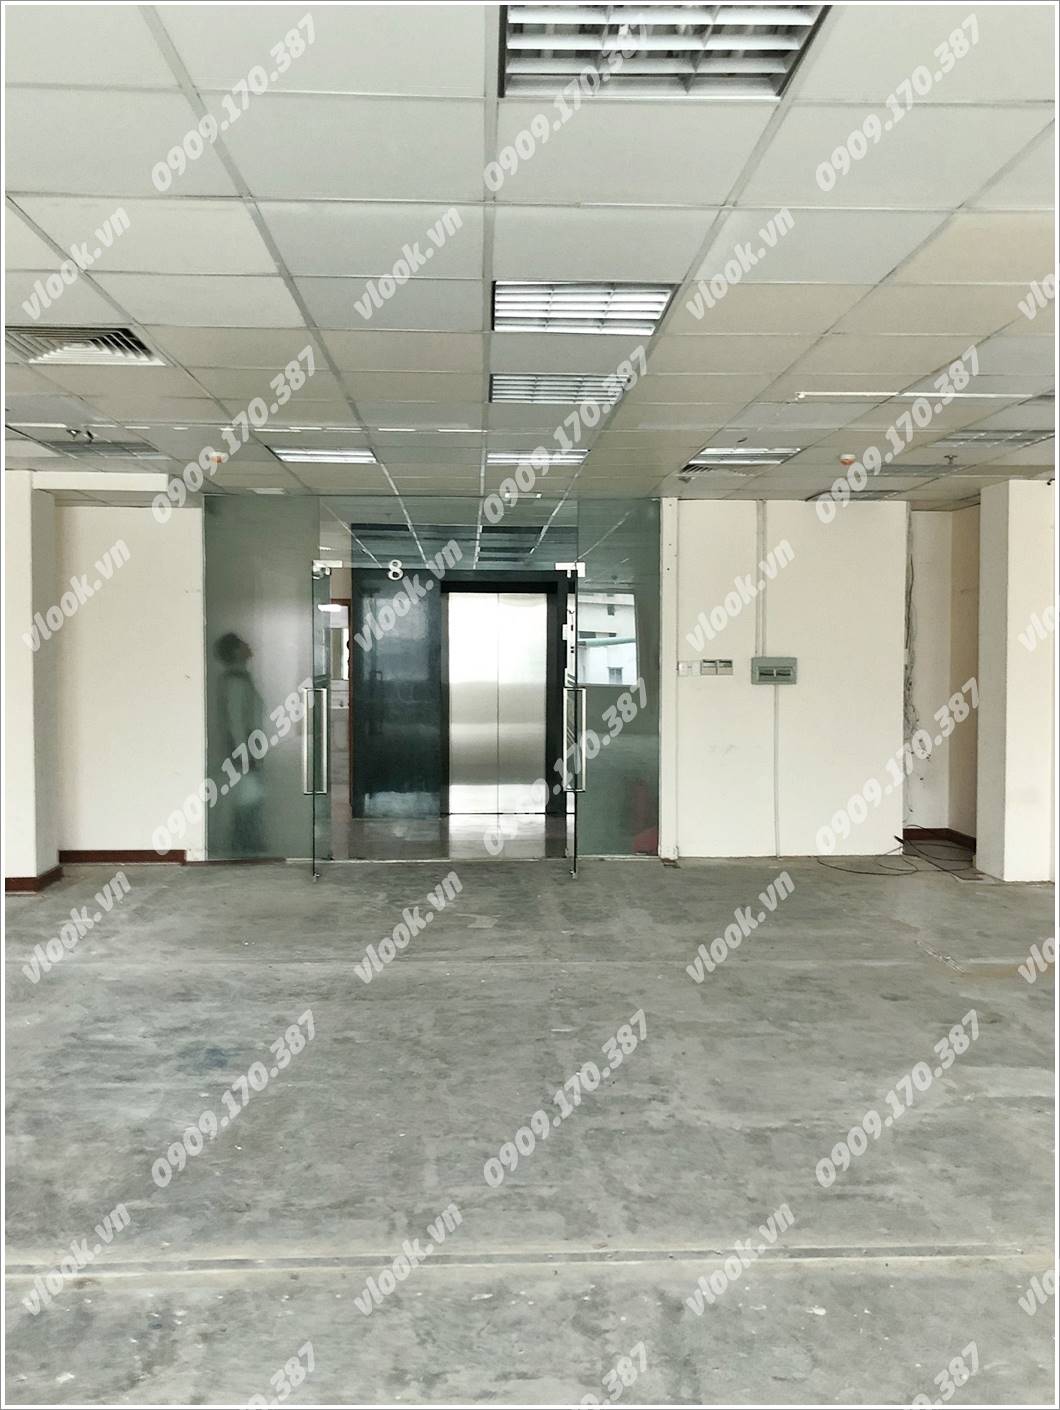 Cao ốc văn phòng cho thuê AVS Building, Trương Quyền, ,Quận 3 - vlook.vn